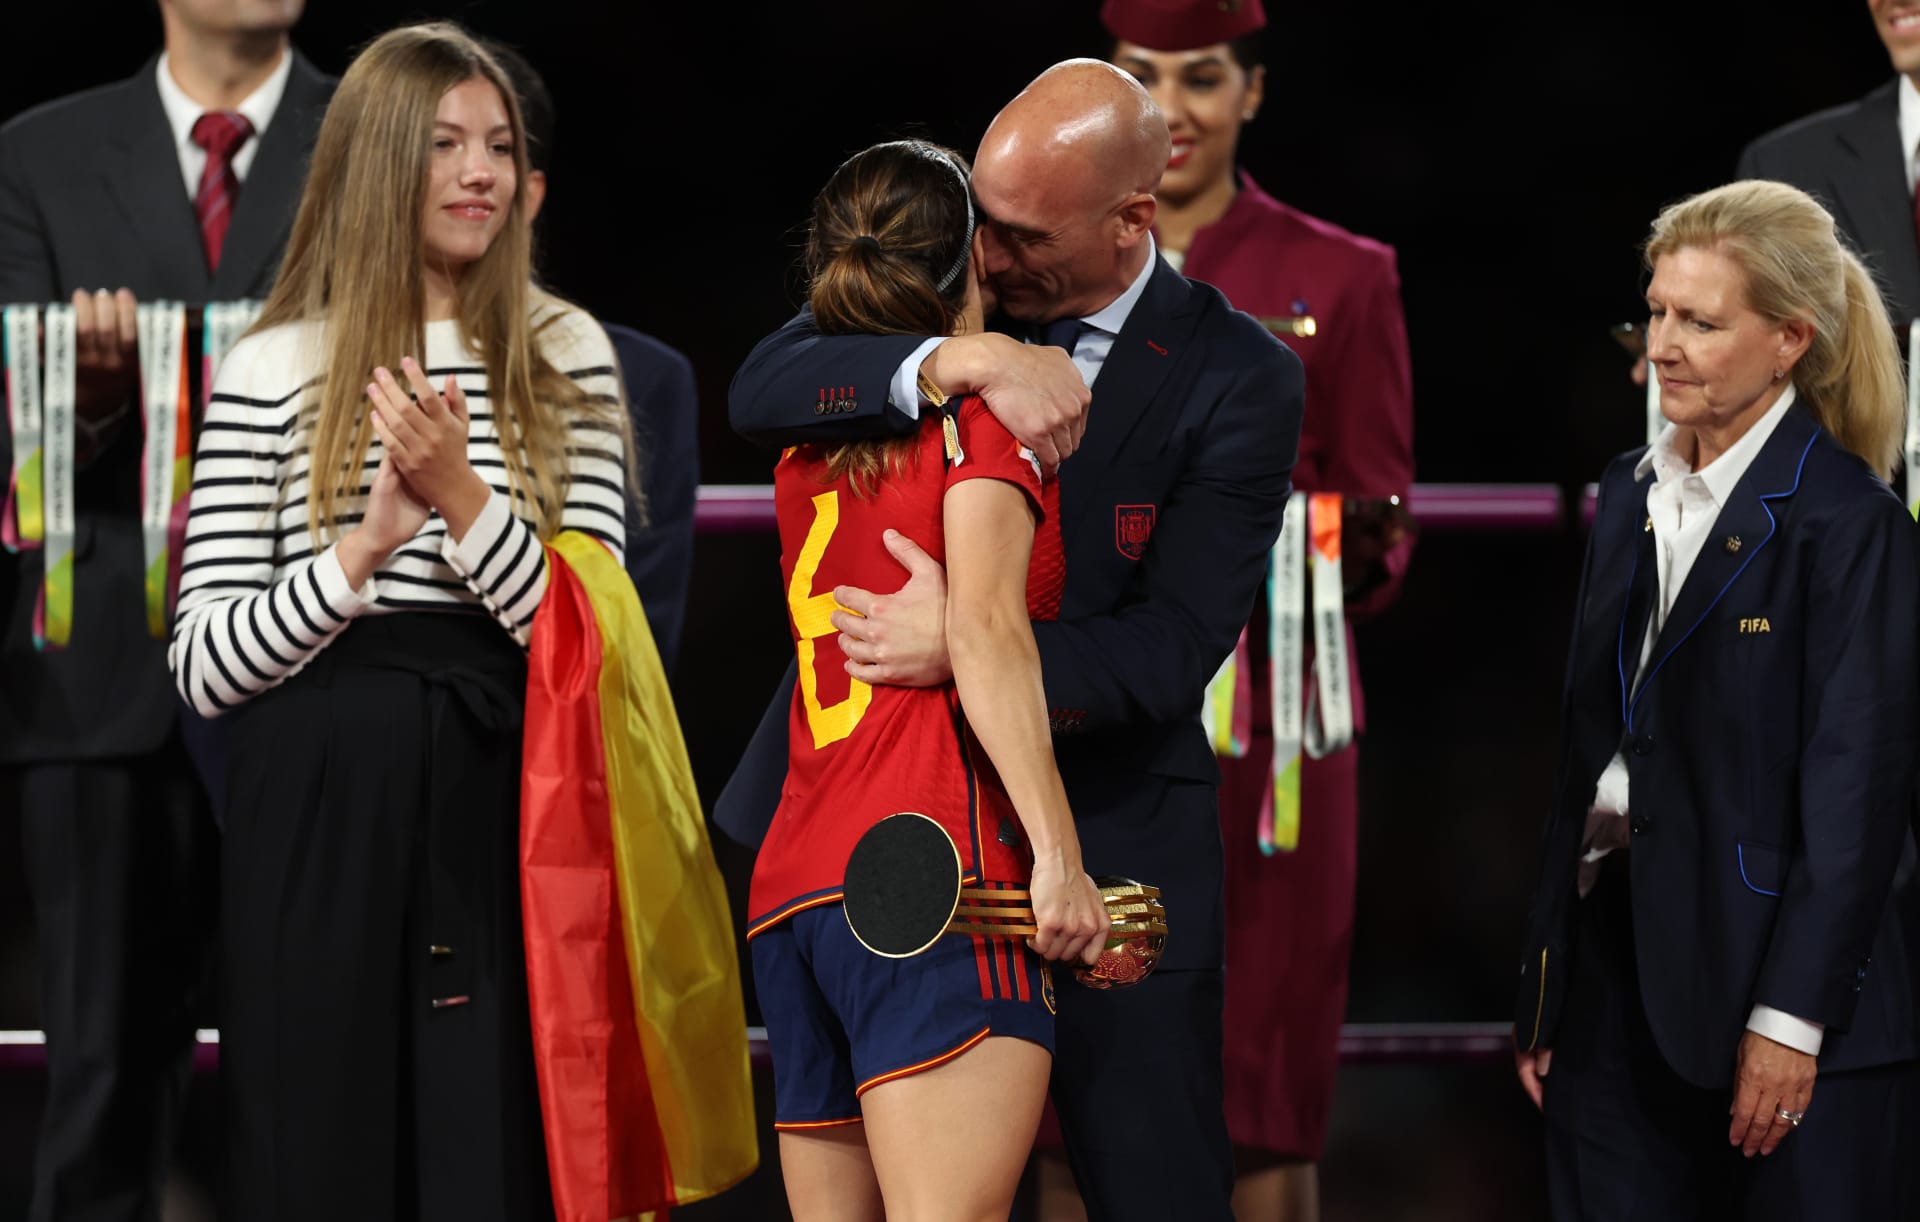 تصريحات صادمة عن رئيس اتحاد إسبانيا لكرة القدم "لويس روبياليس"